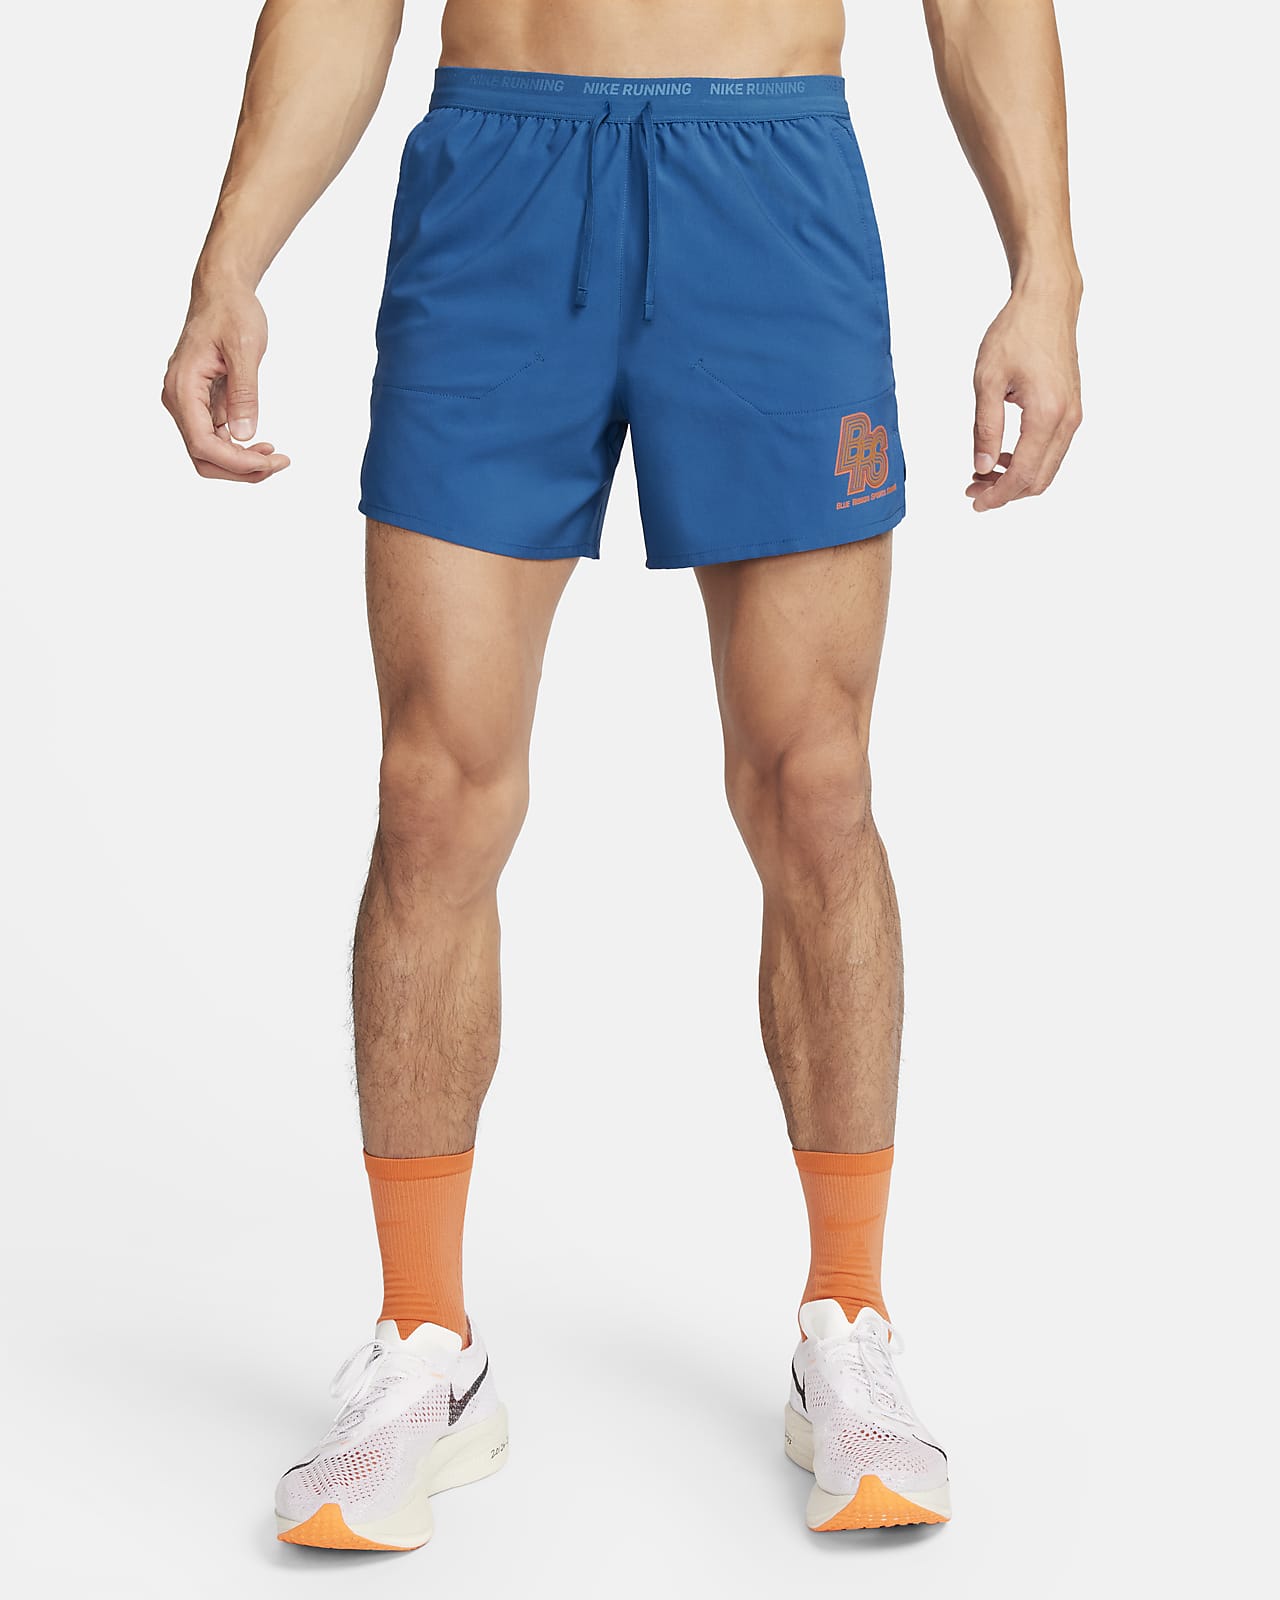 Nike Running Energy Stride hardloopshorts met binnenbroek voor heren (13 cm)